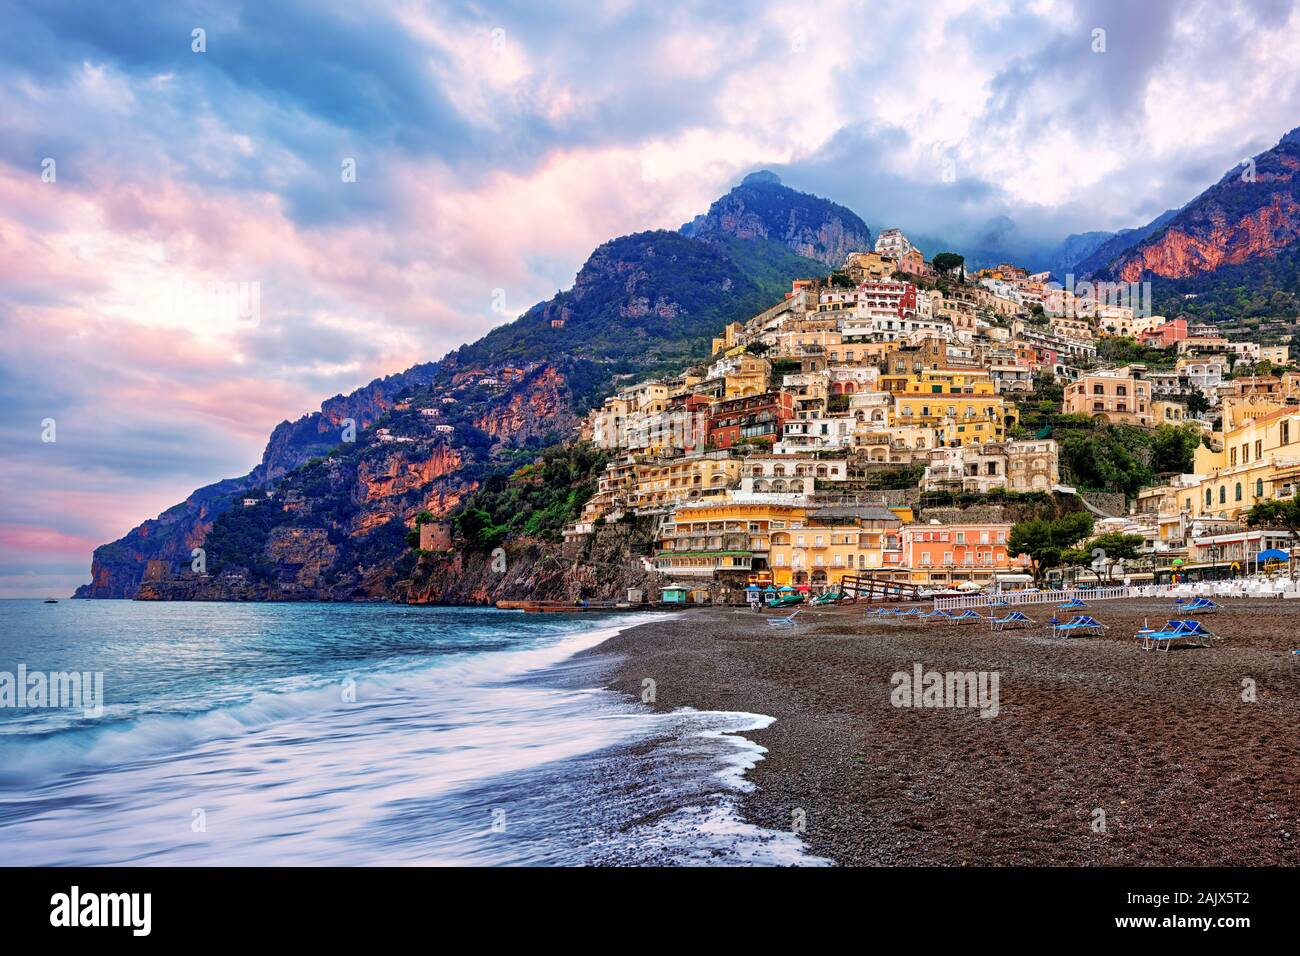 Positano, einer Stadt an der Amalfiküste, Neapel, Italien, drastisch auf einem steilen Felsen zwischen Meer und Bergen gelegen, ist ein berühmter Reisen destina Stockfoto